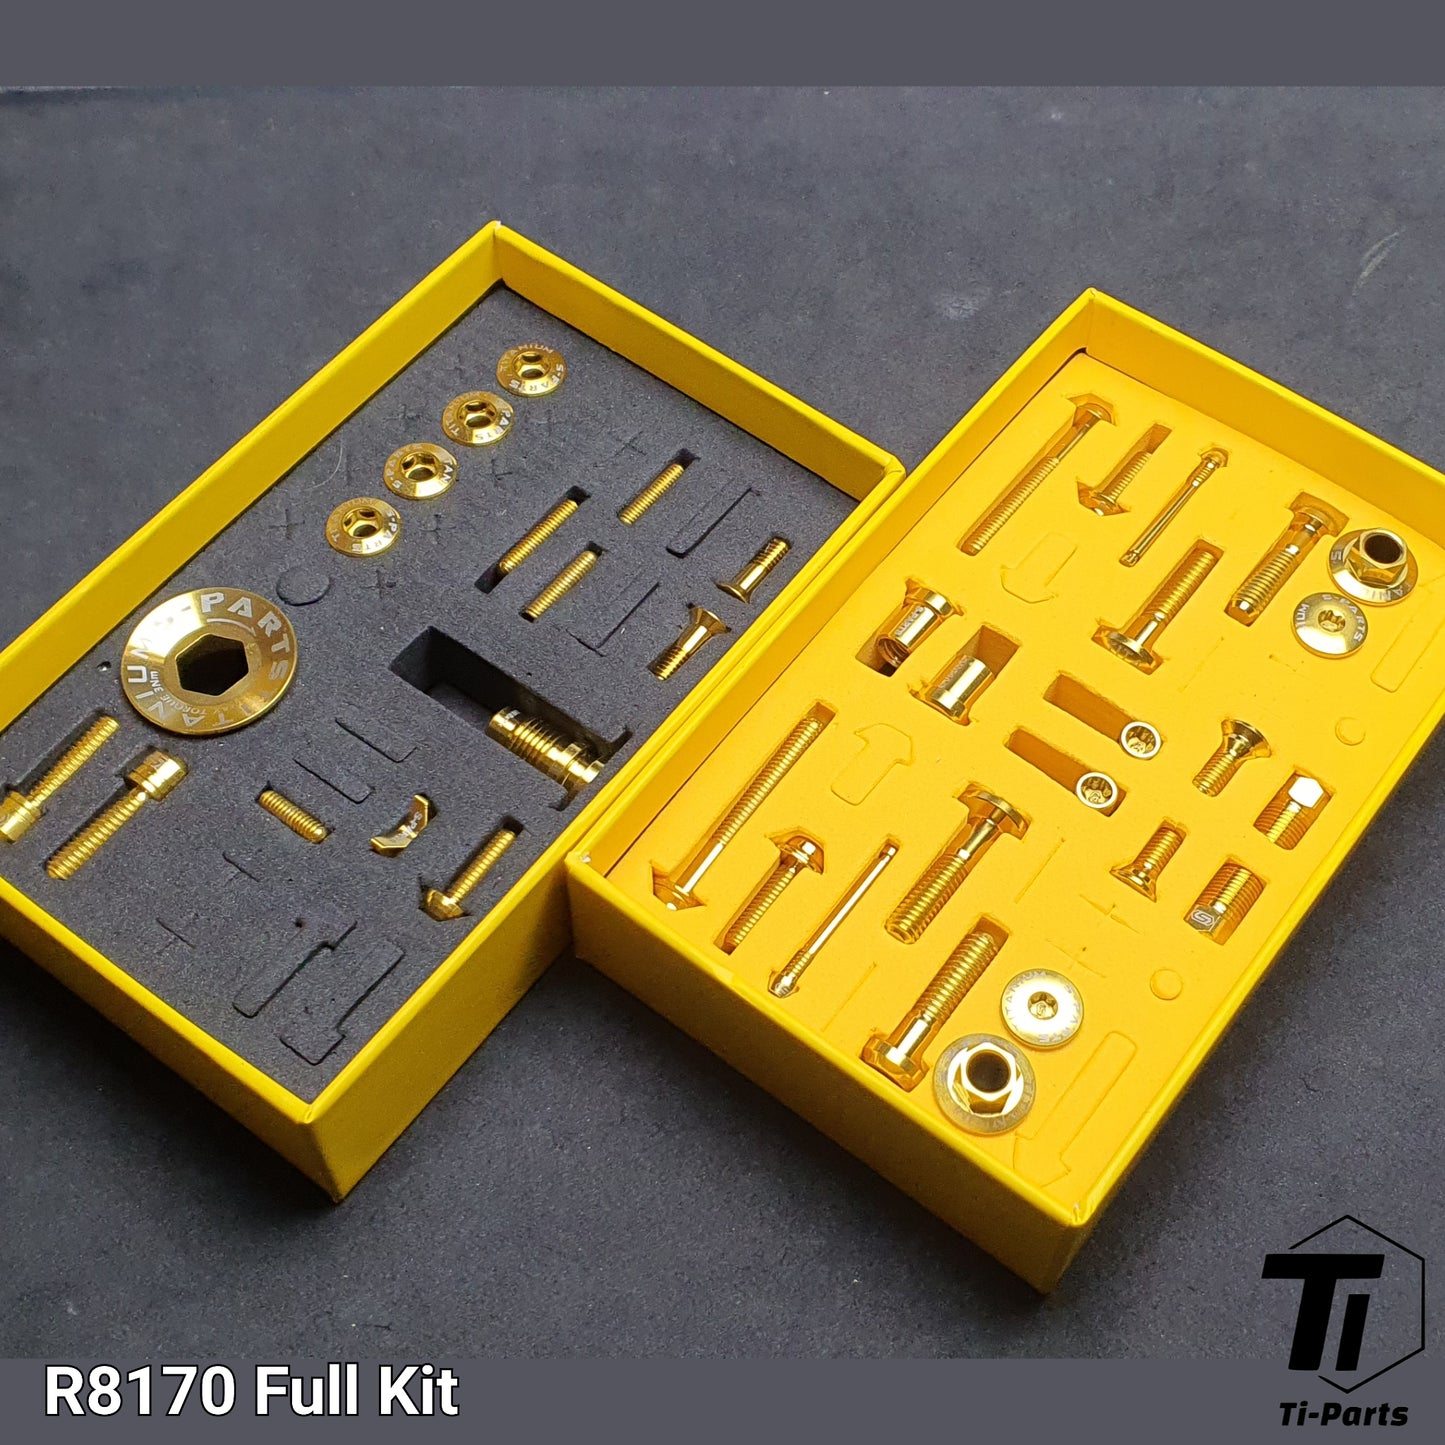 Kit de atualização de titânio para R9270 R8170 R7170 Shimano | Freio de transmissão Dura Ace Ultegra 105 12s R9200 R9250 R8150 | Parafuso de titânio